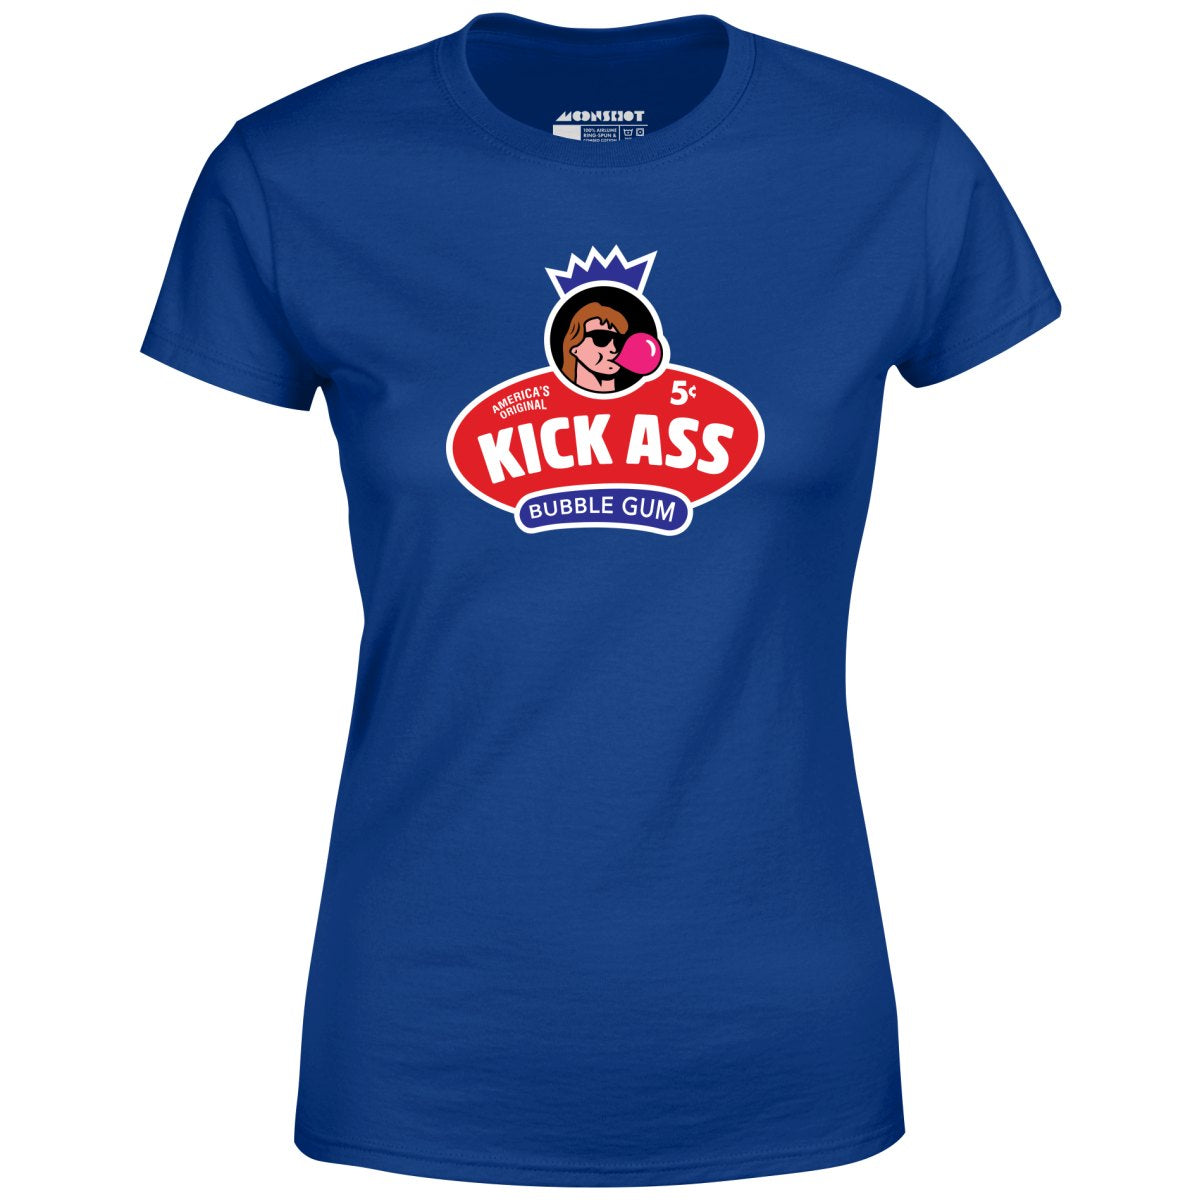 Kick Ass Bubble Gum - Women's T-Shirt